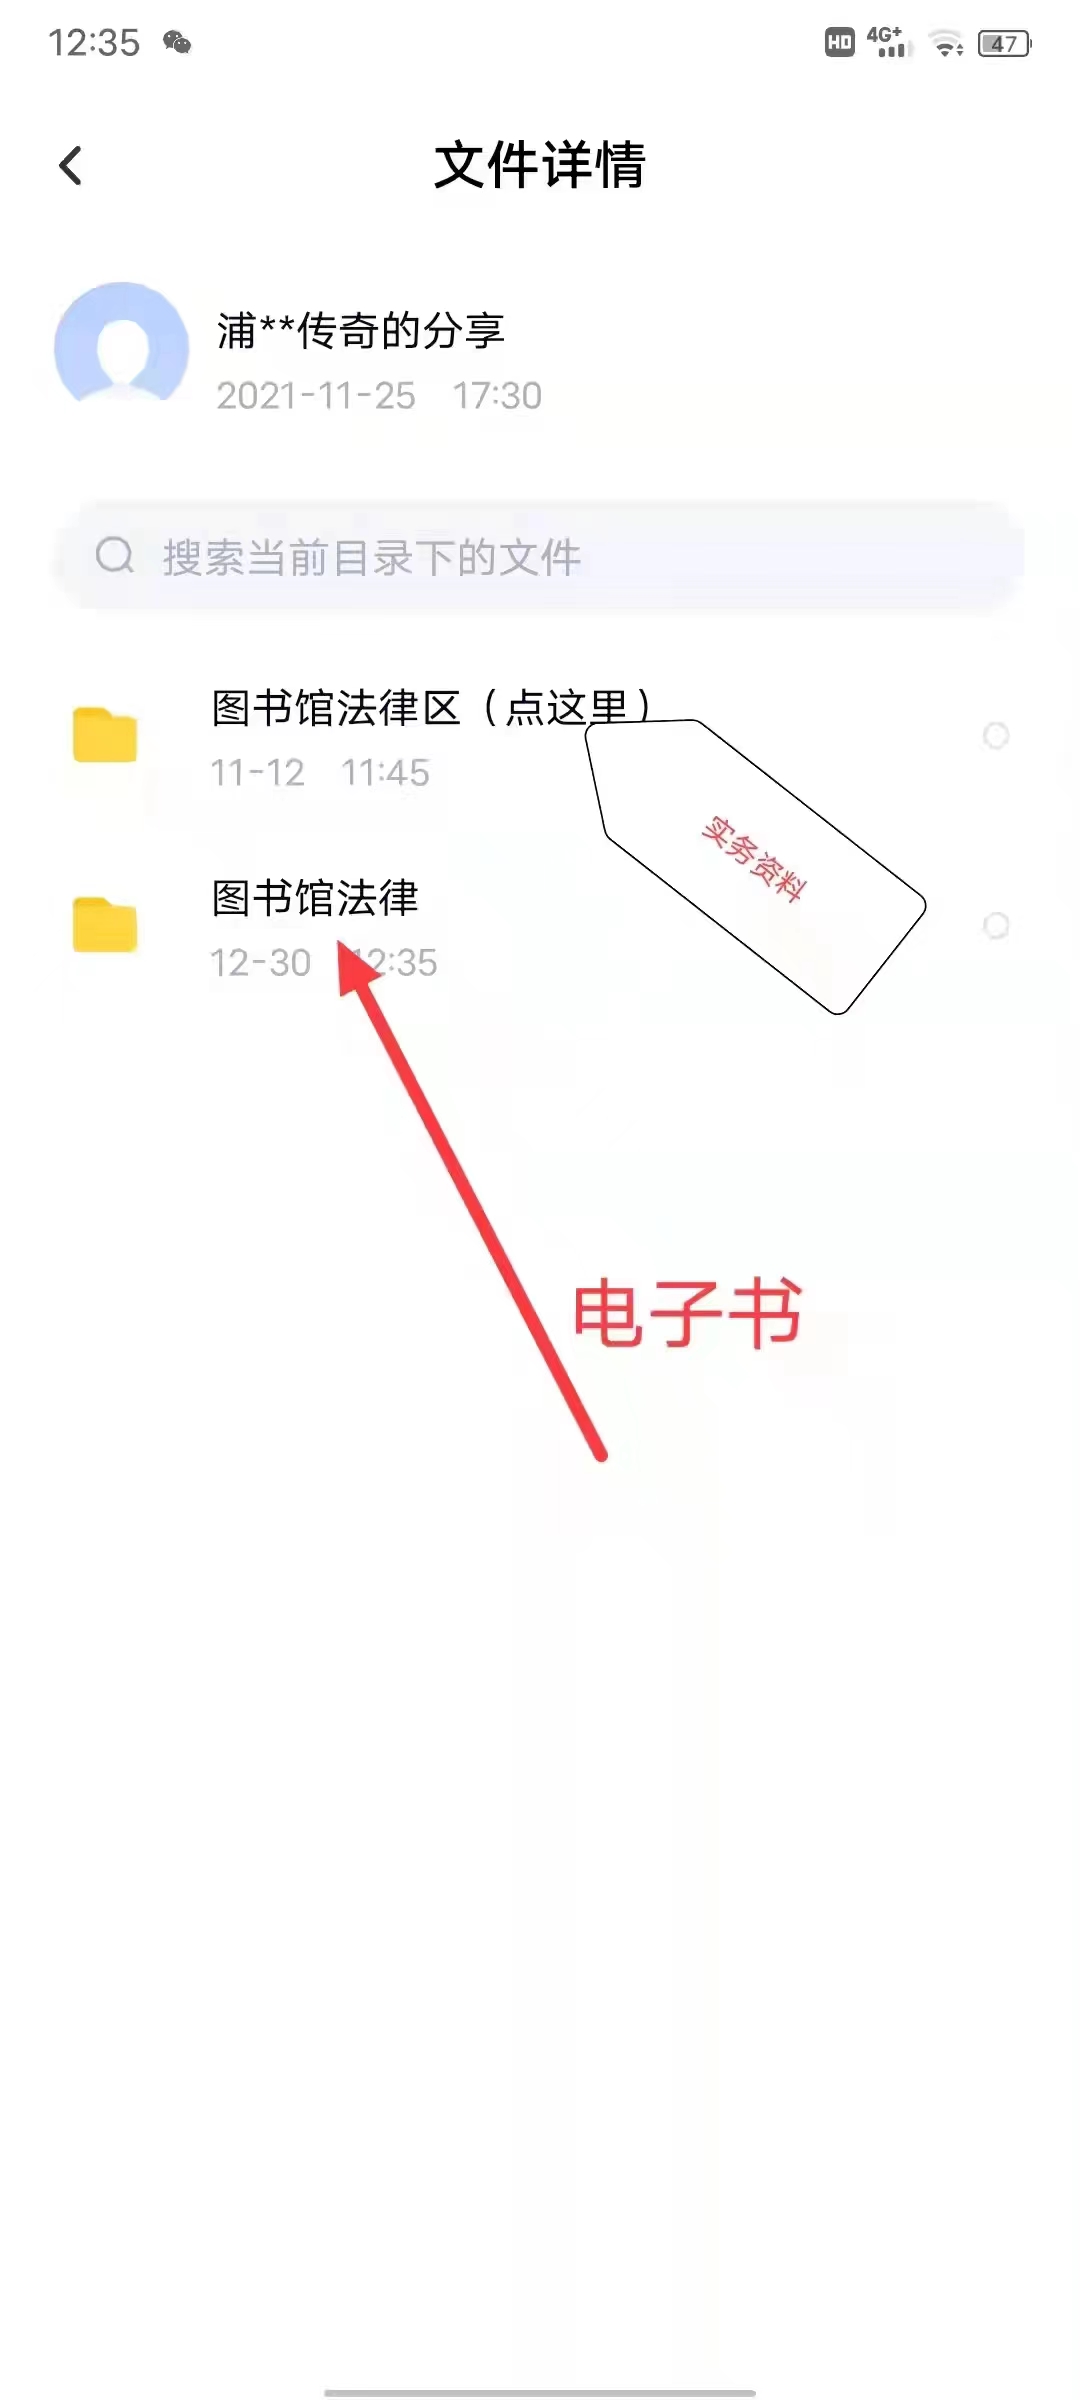 【法律】【PDF】088 律师办理涉税疑难复杂案件实录 202210 刘兵